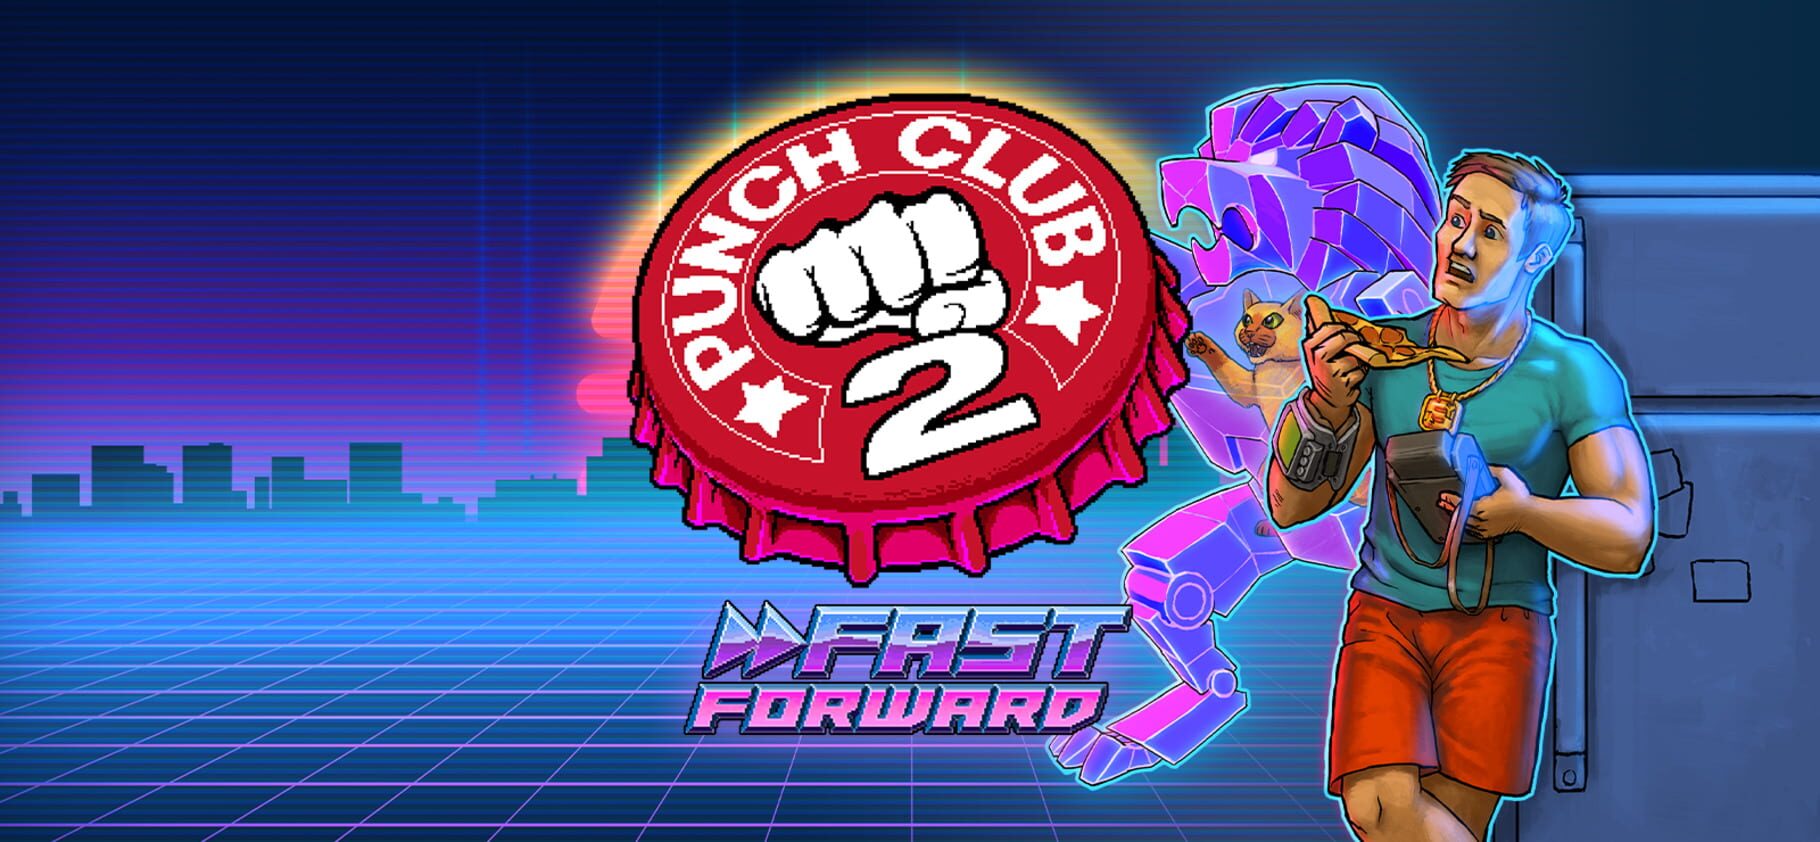 Punch Club 2: Fast Forward artwork